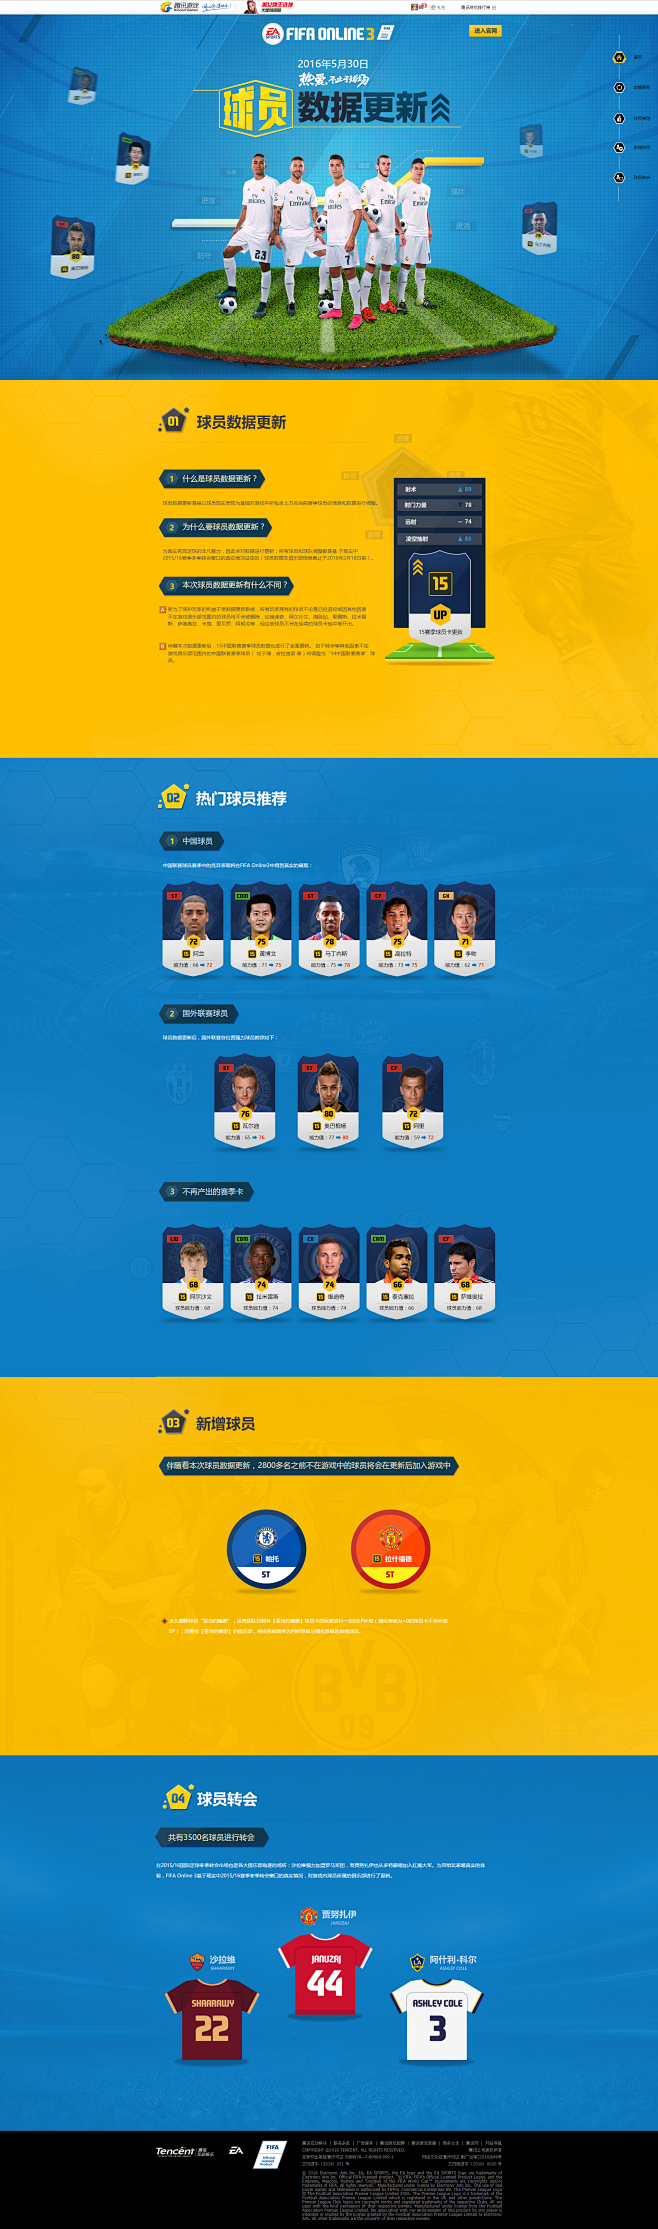 球员数据更新 - FIFA Online...